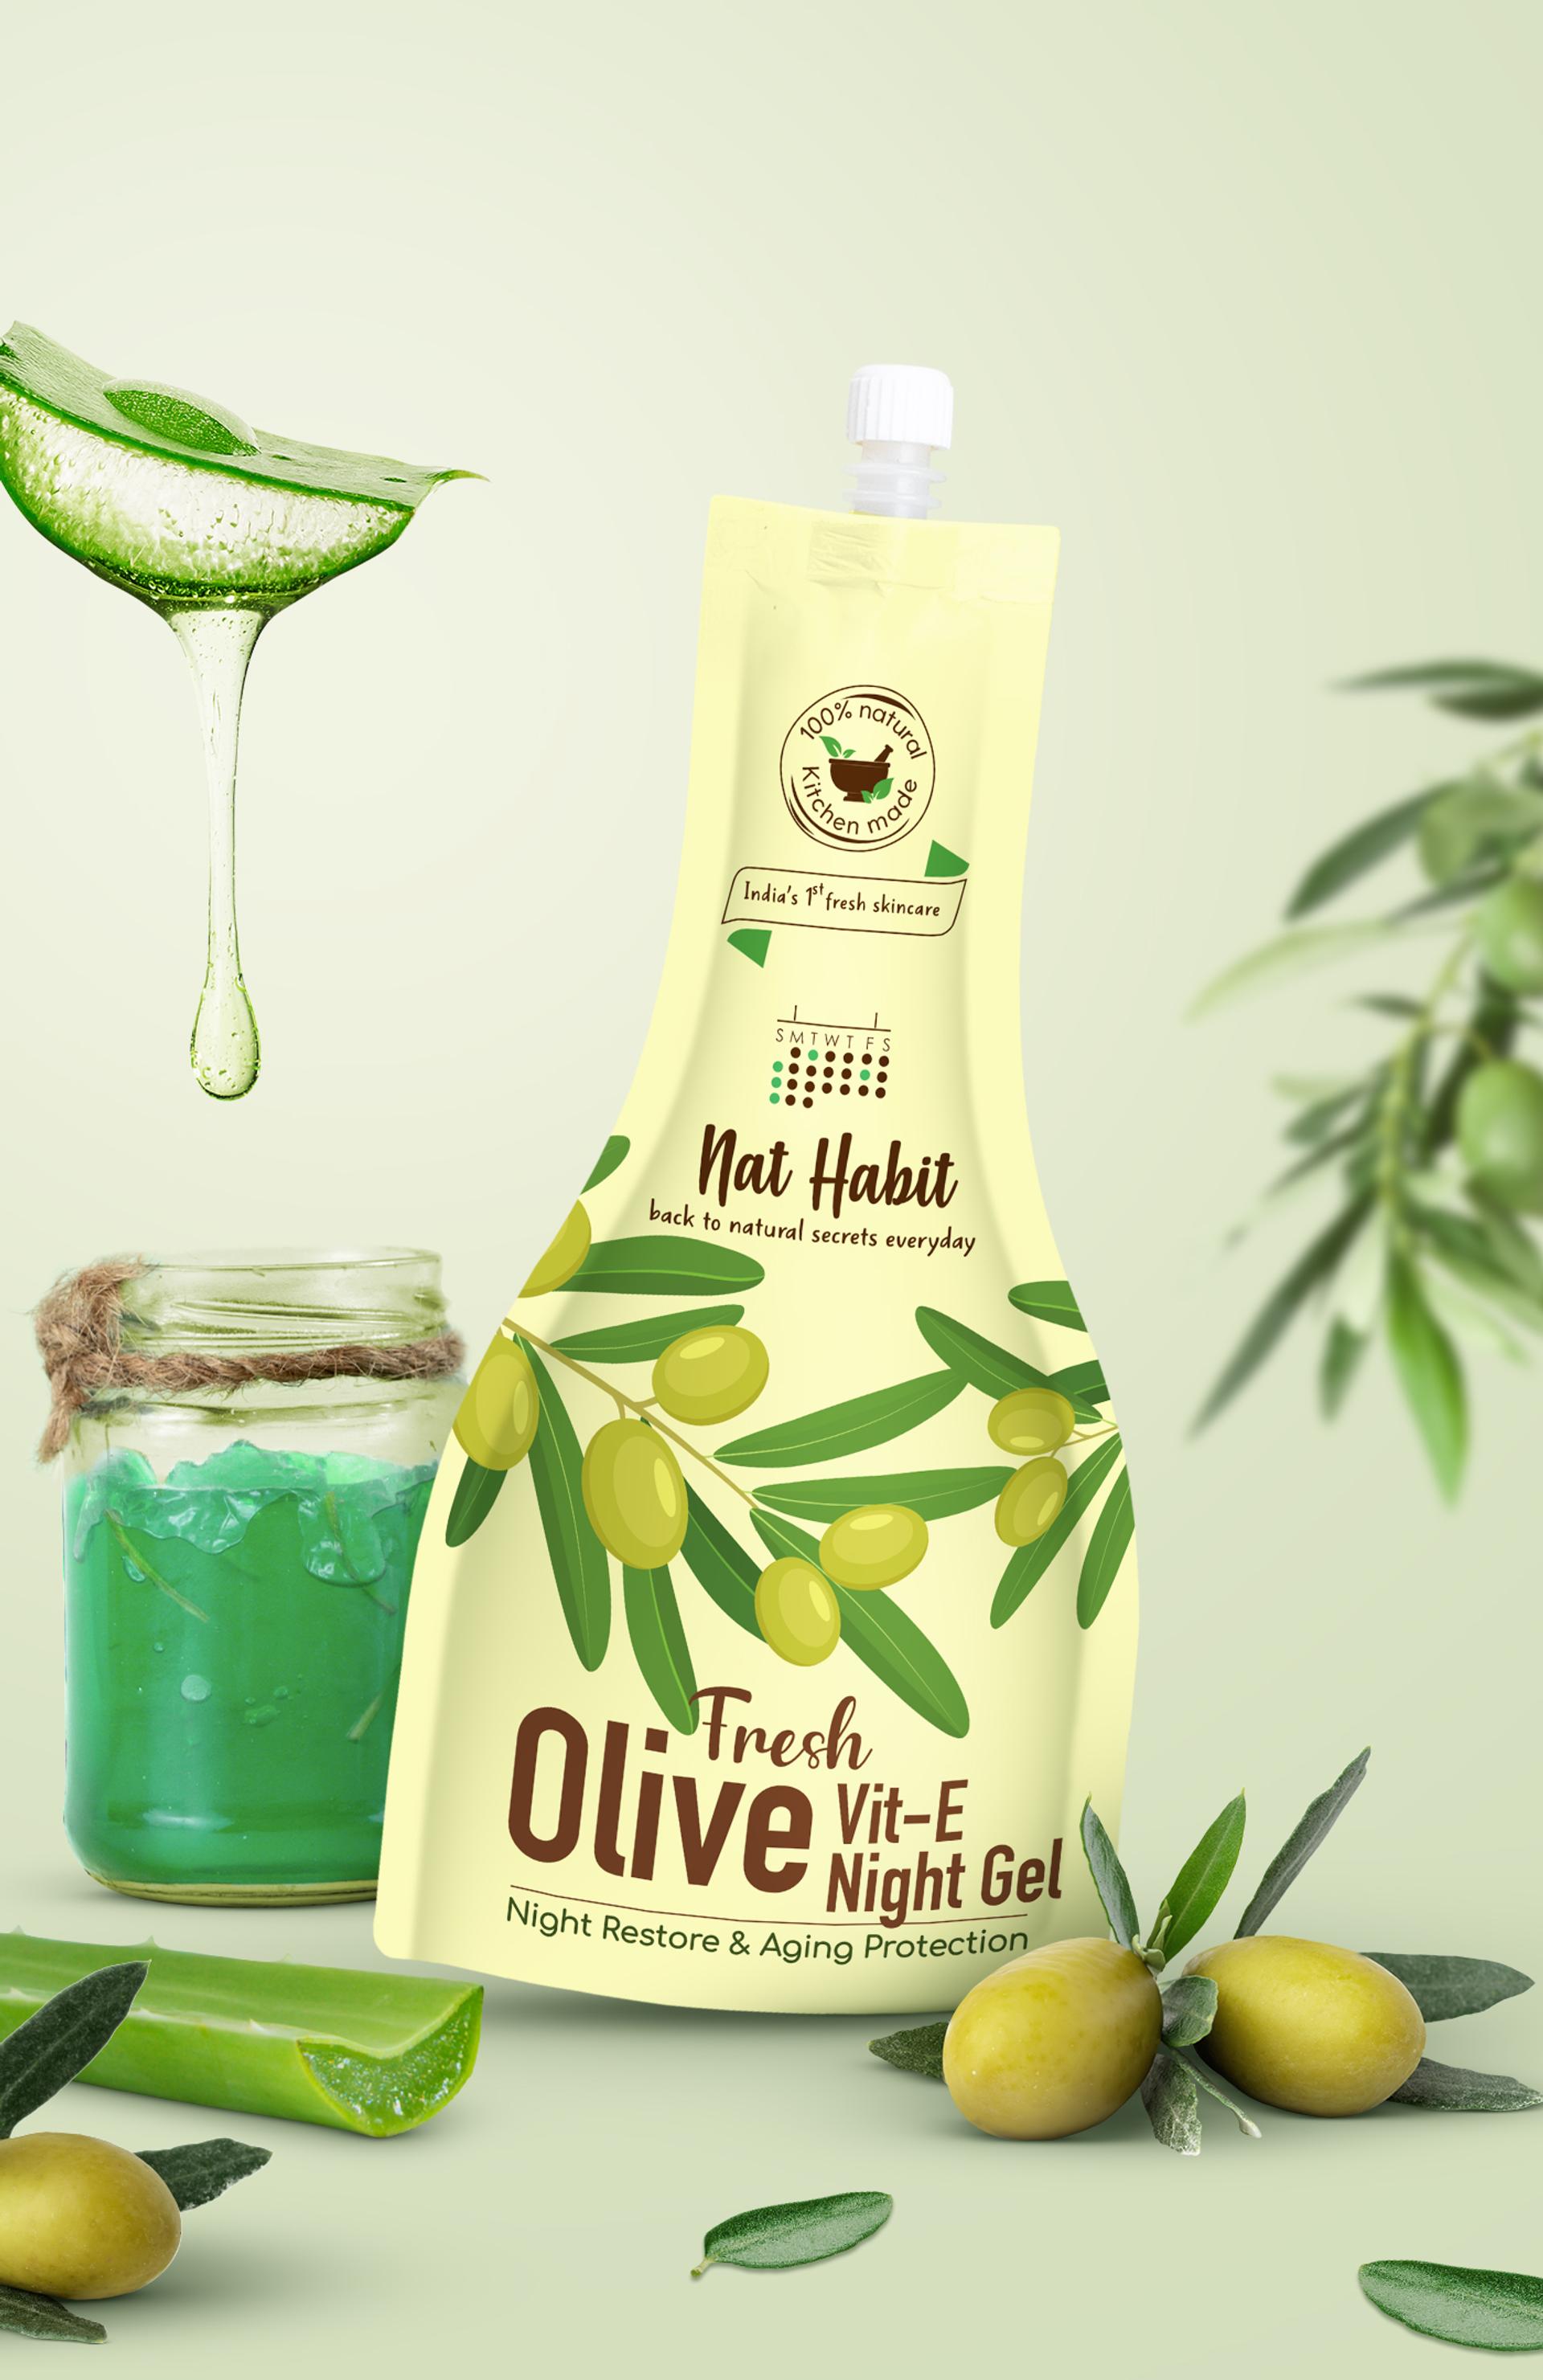 Olive-Vit-E